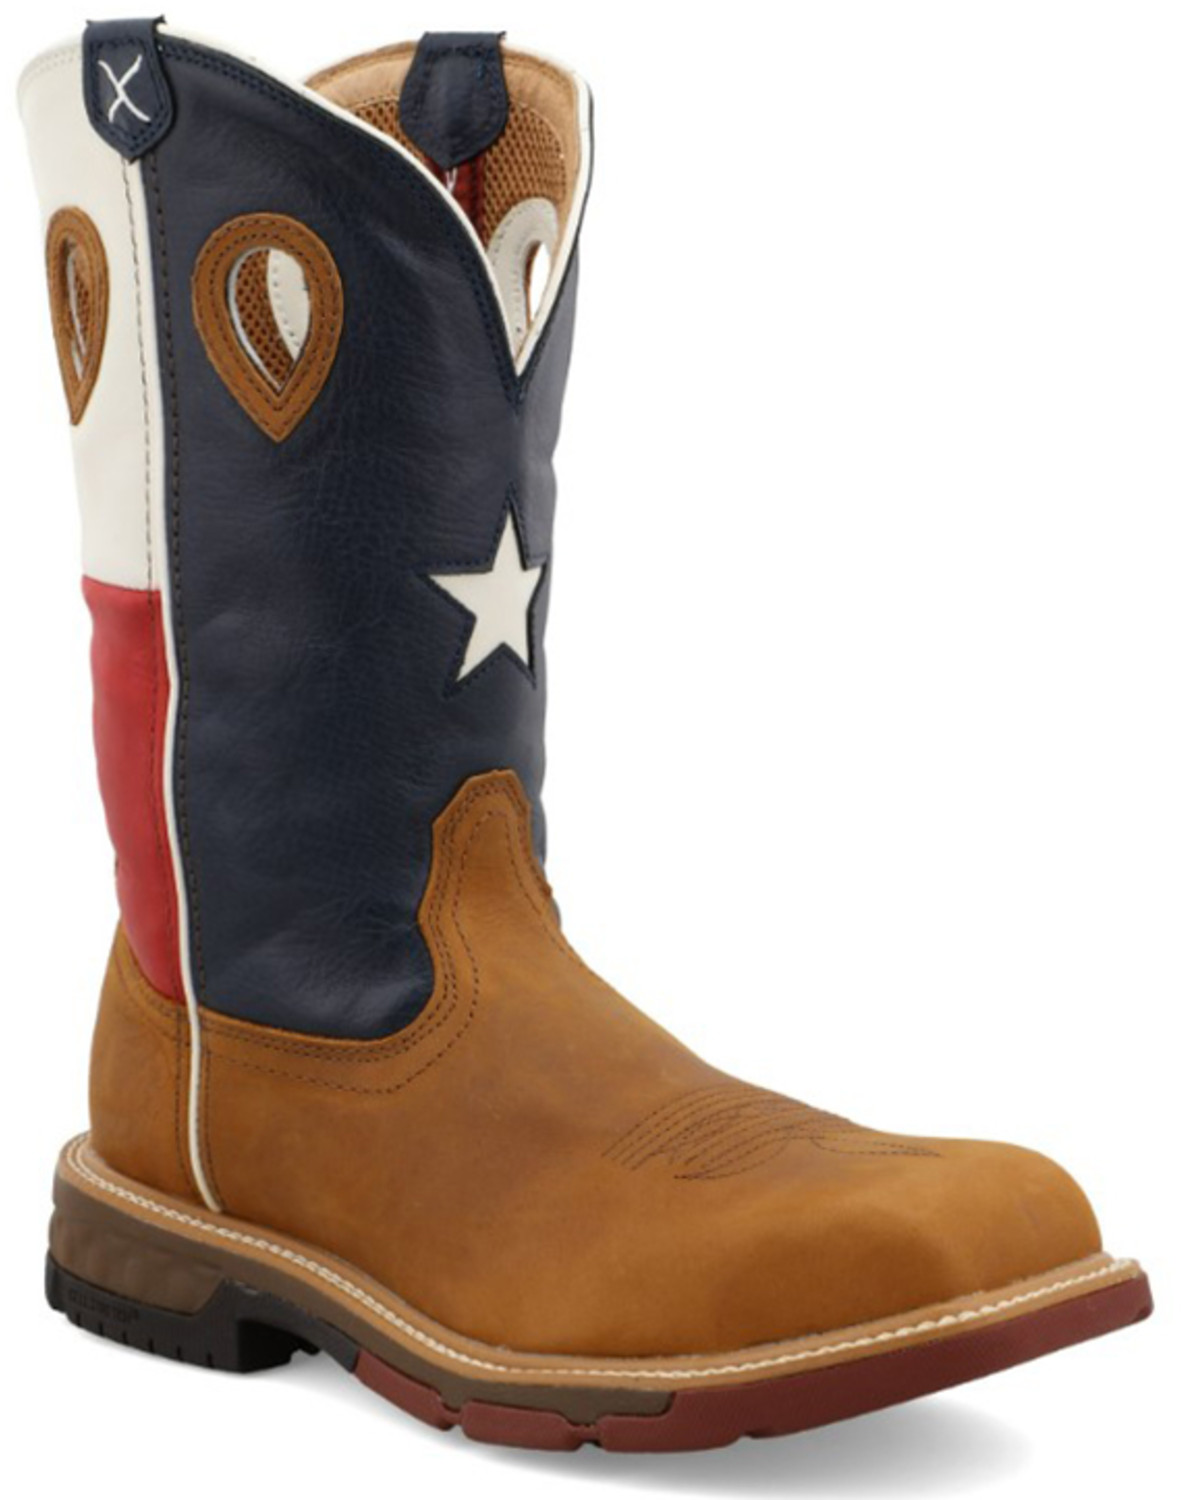 Men's American Flag Cowboy Boots